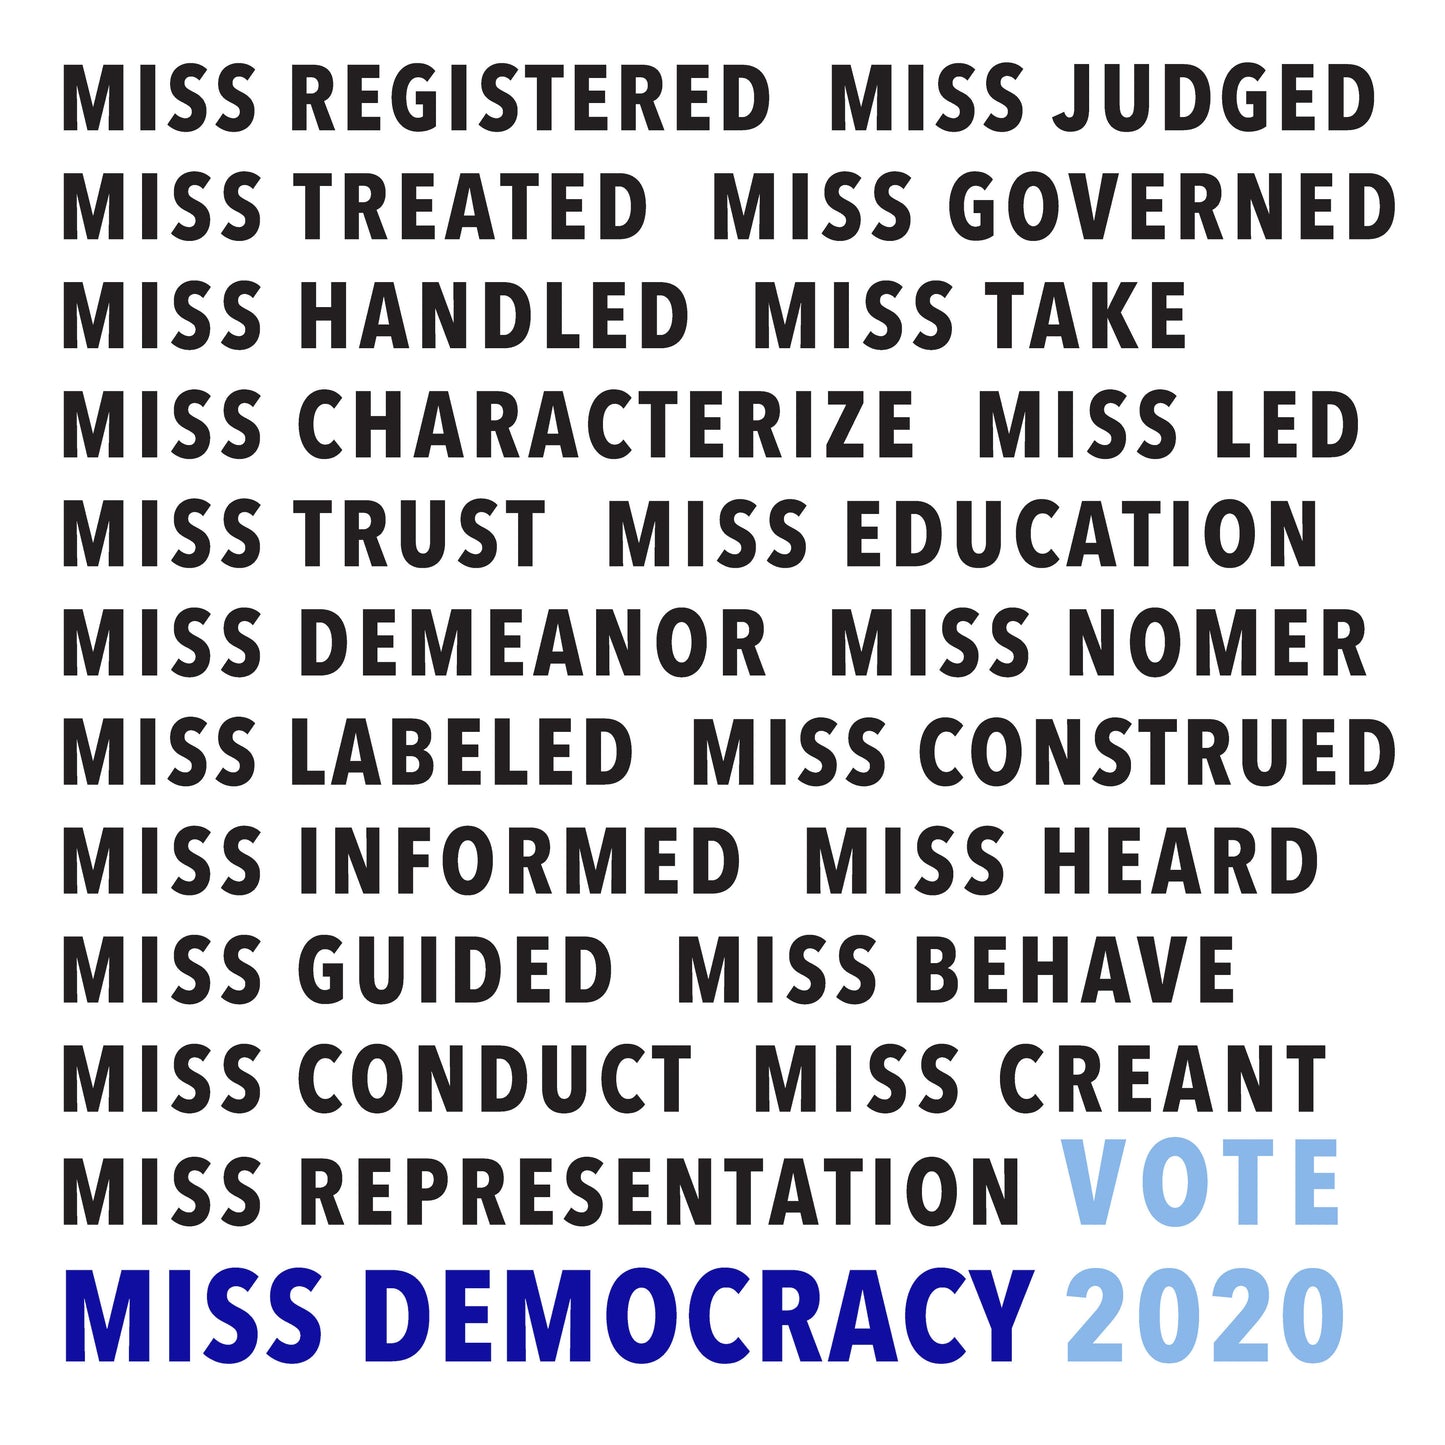 Victory Garden | Miss Democracy 2020 – Miss Democracy